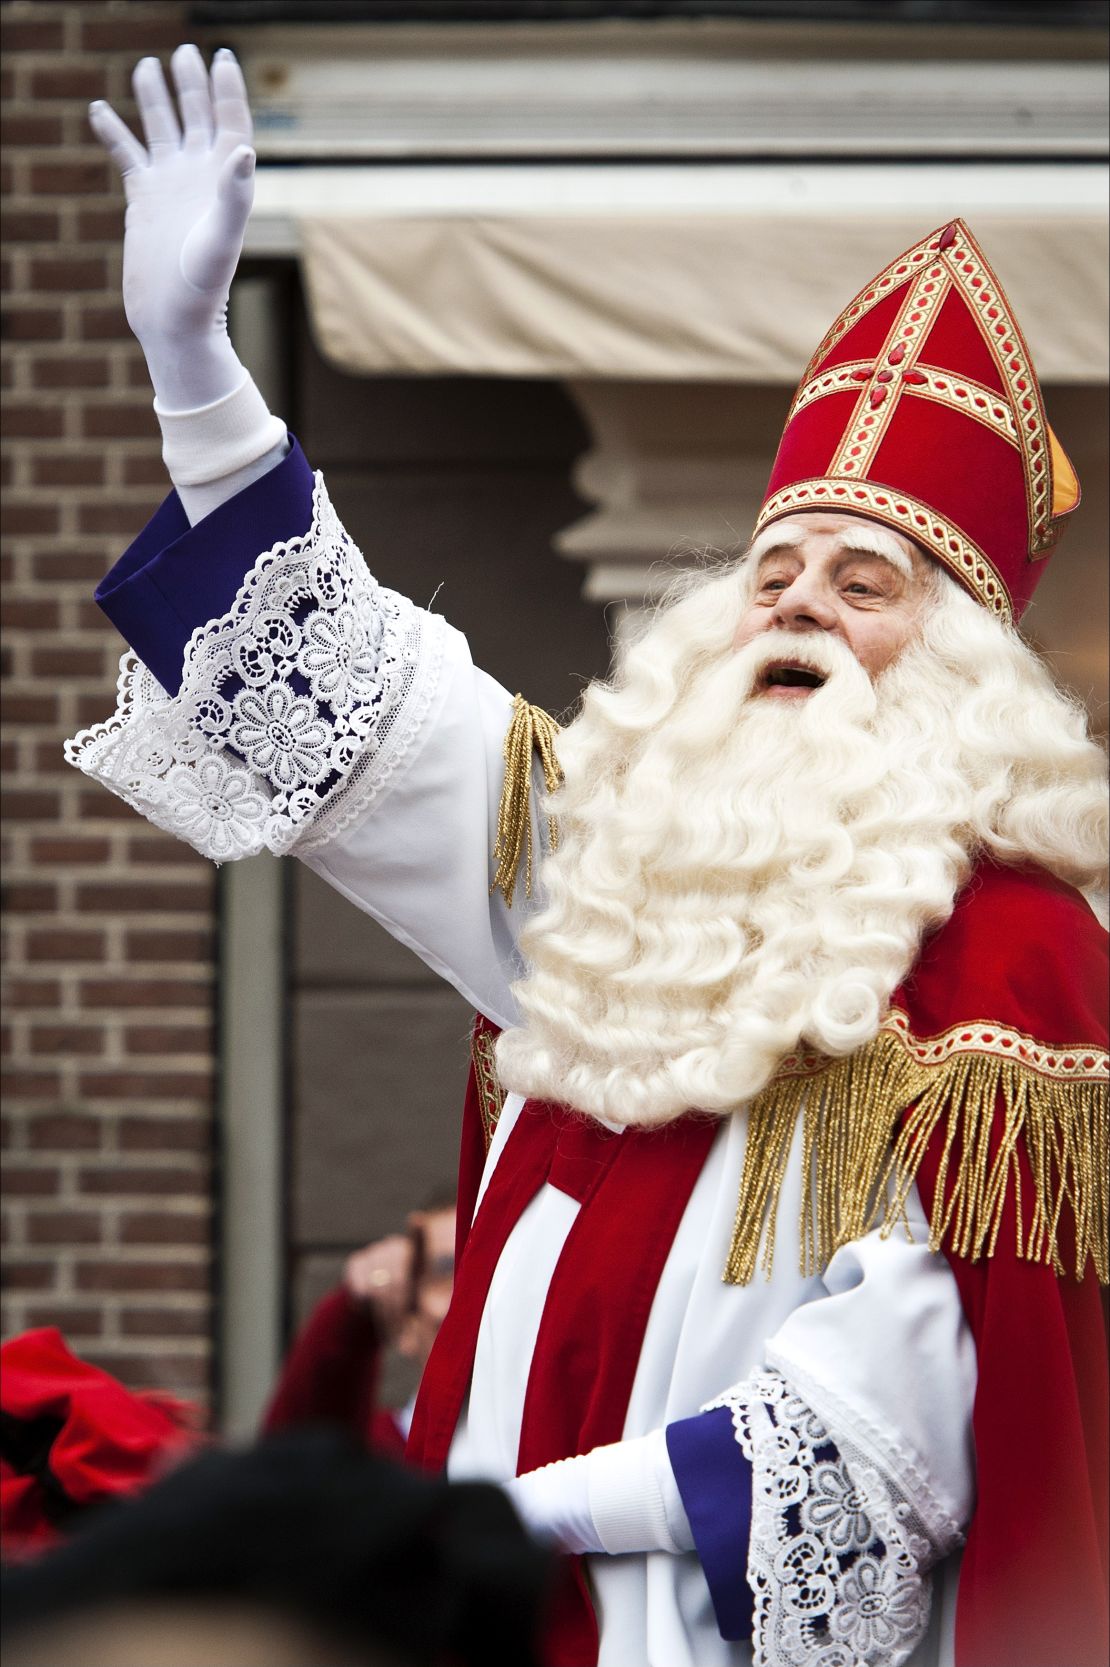 Meet Sinterklaas -- think of him as a "bridge Santa" between St. Nicholas and modern Santa.